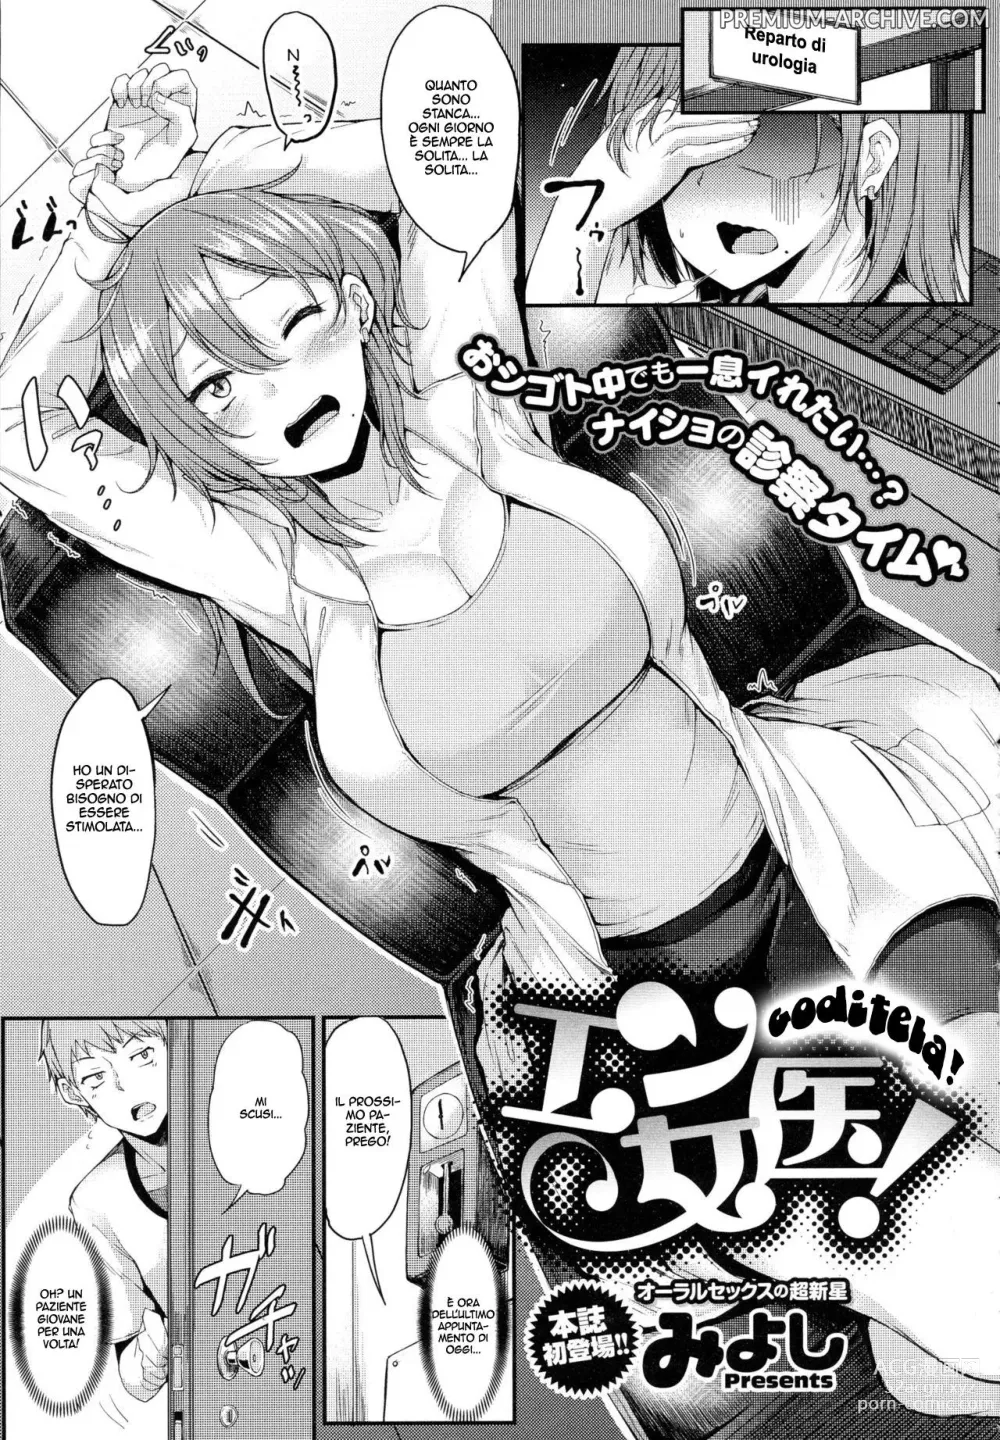 Page 1 of manga Goditela!